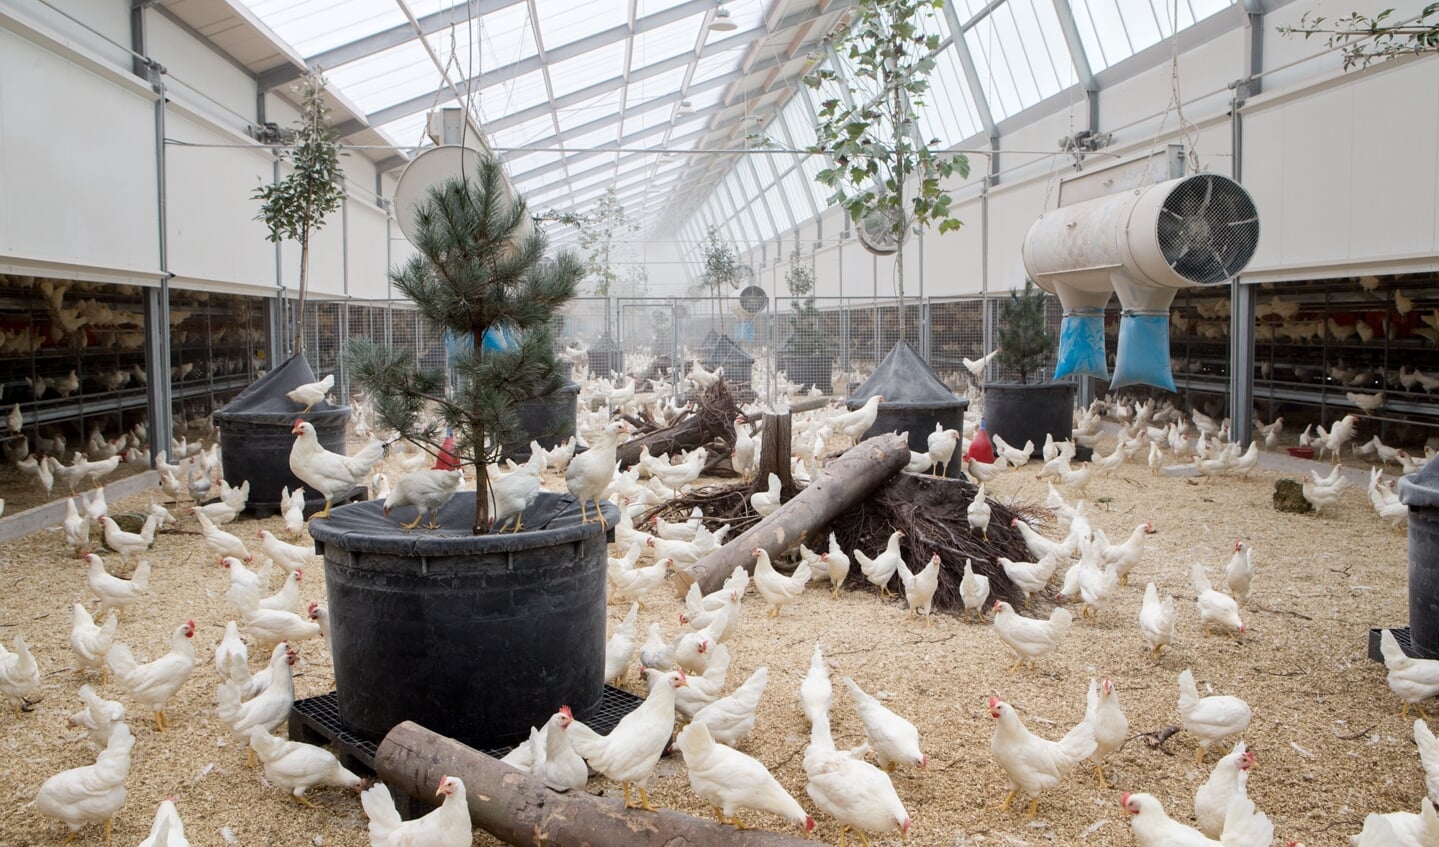 De stallen van leghennenbedrijf Kipster hebben een grote binnentuin met daglicht waar bomen in staan en takken in liggen waar de kippen in kunnen springen.